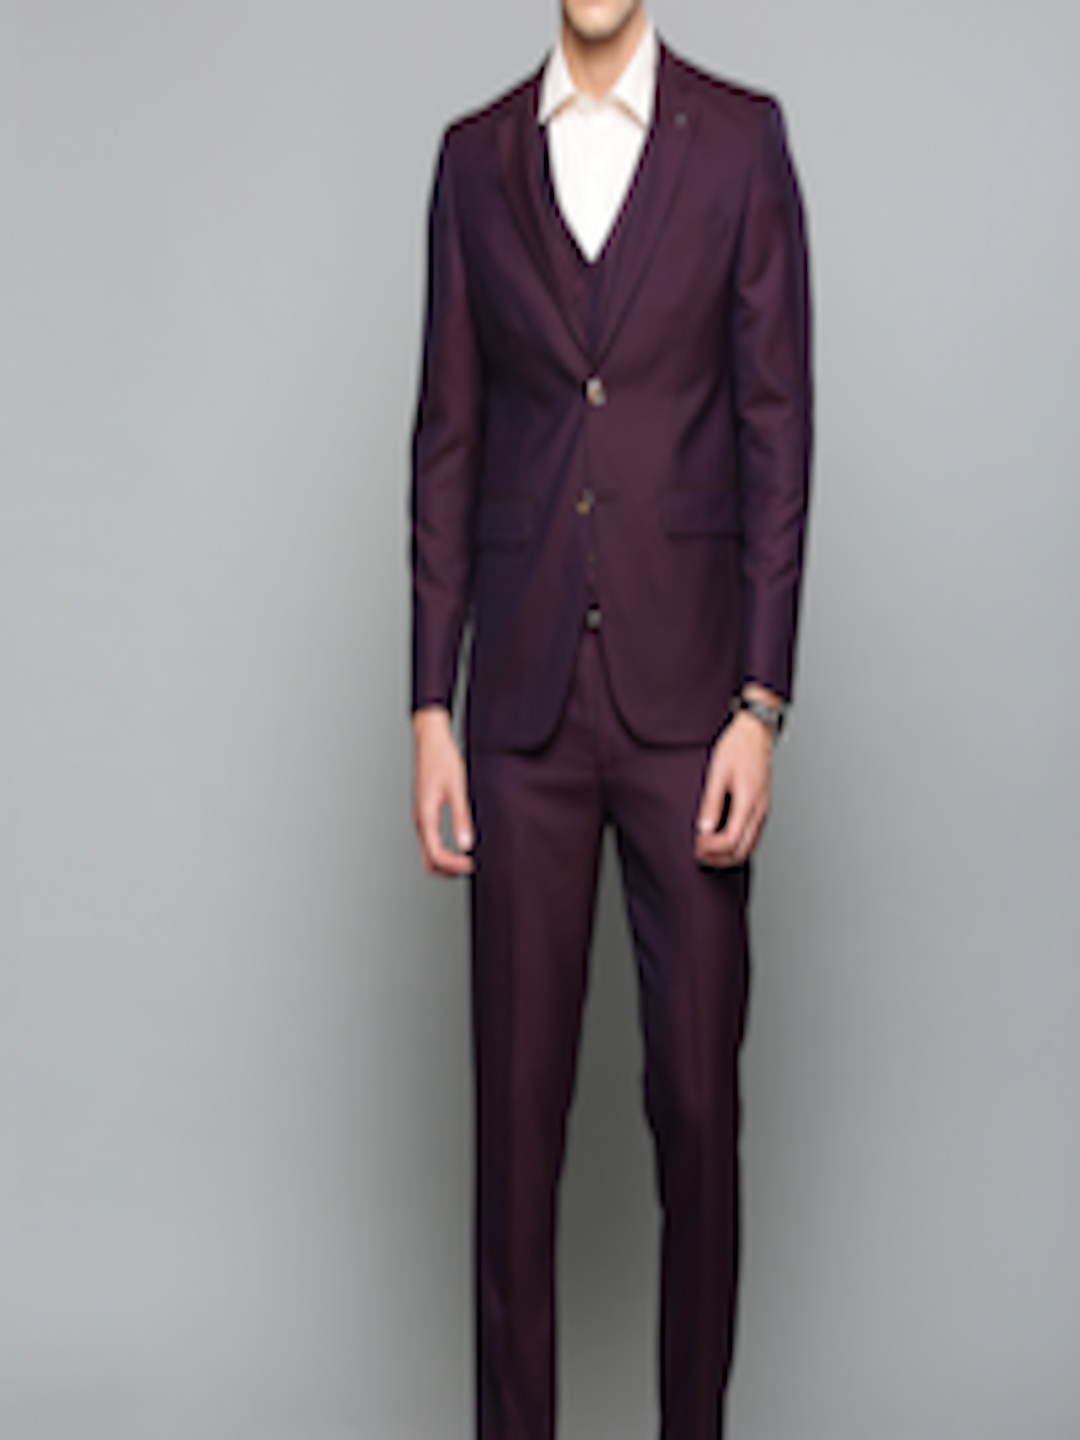 Buy Louis Philippe Men Maroon & Navy Blue Self Design Slim Fit Single Breasted Formal Suit ...